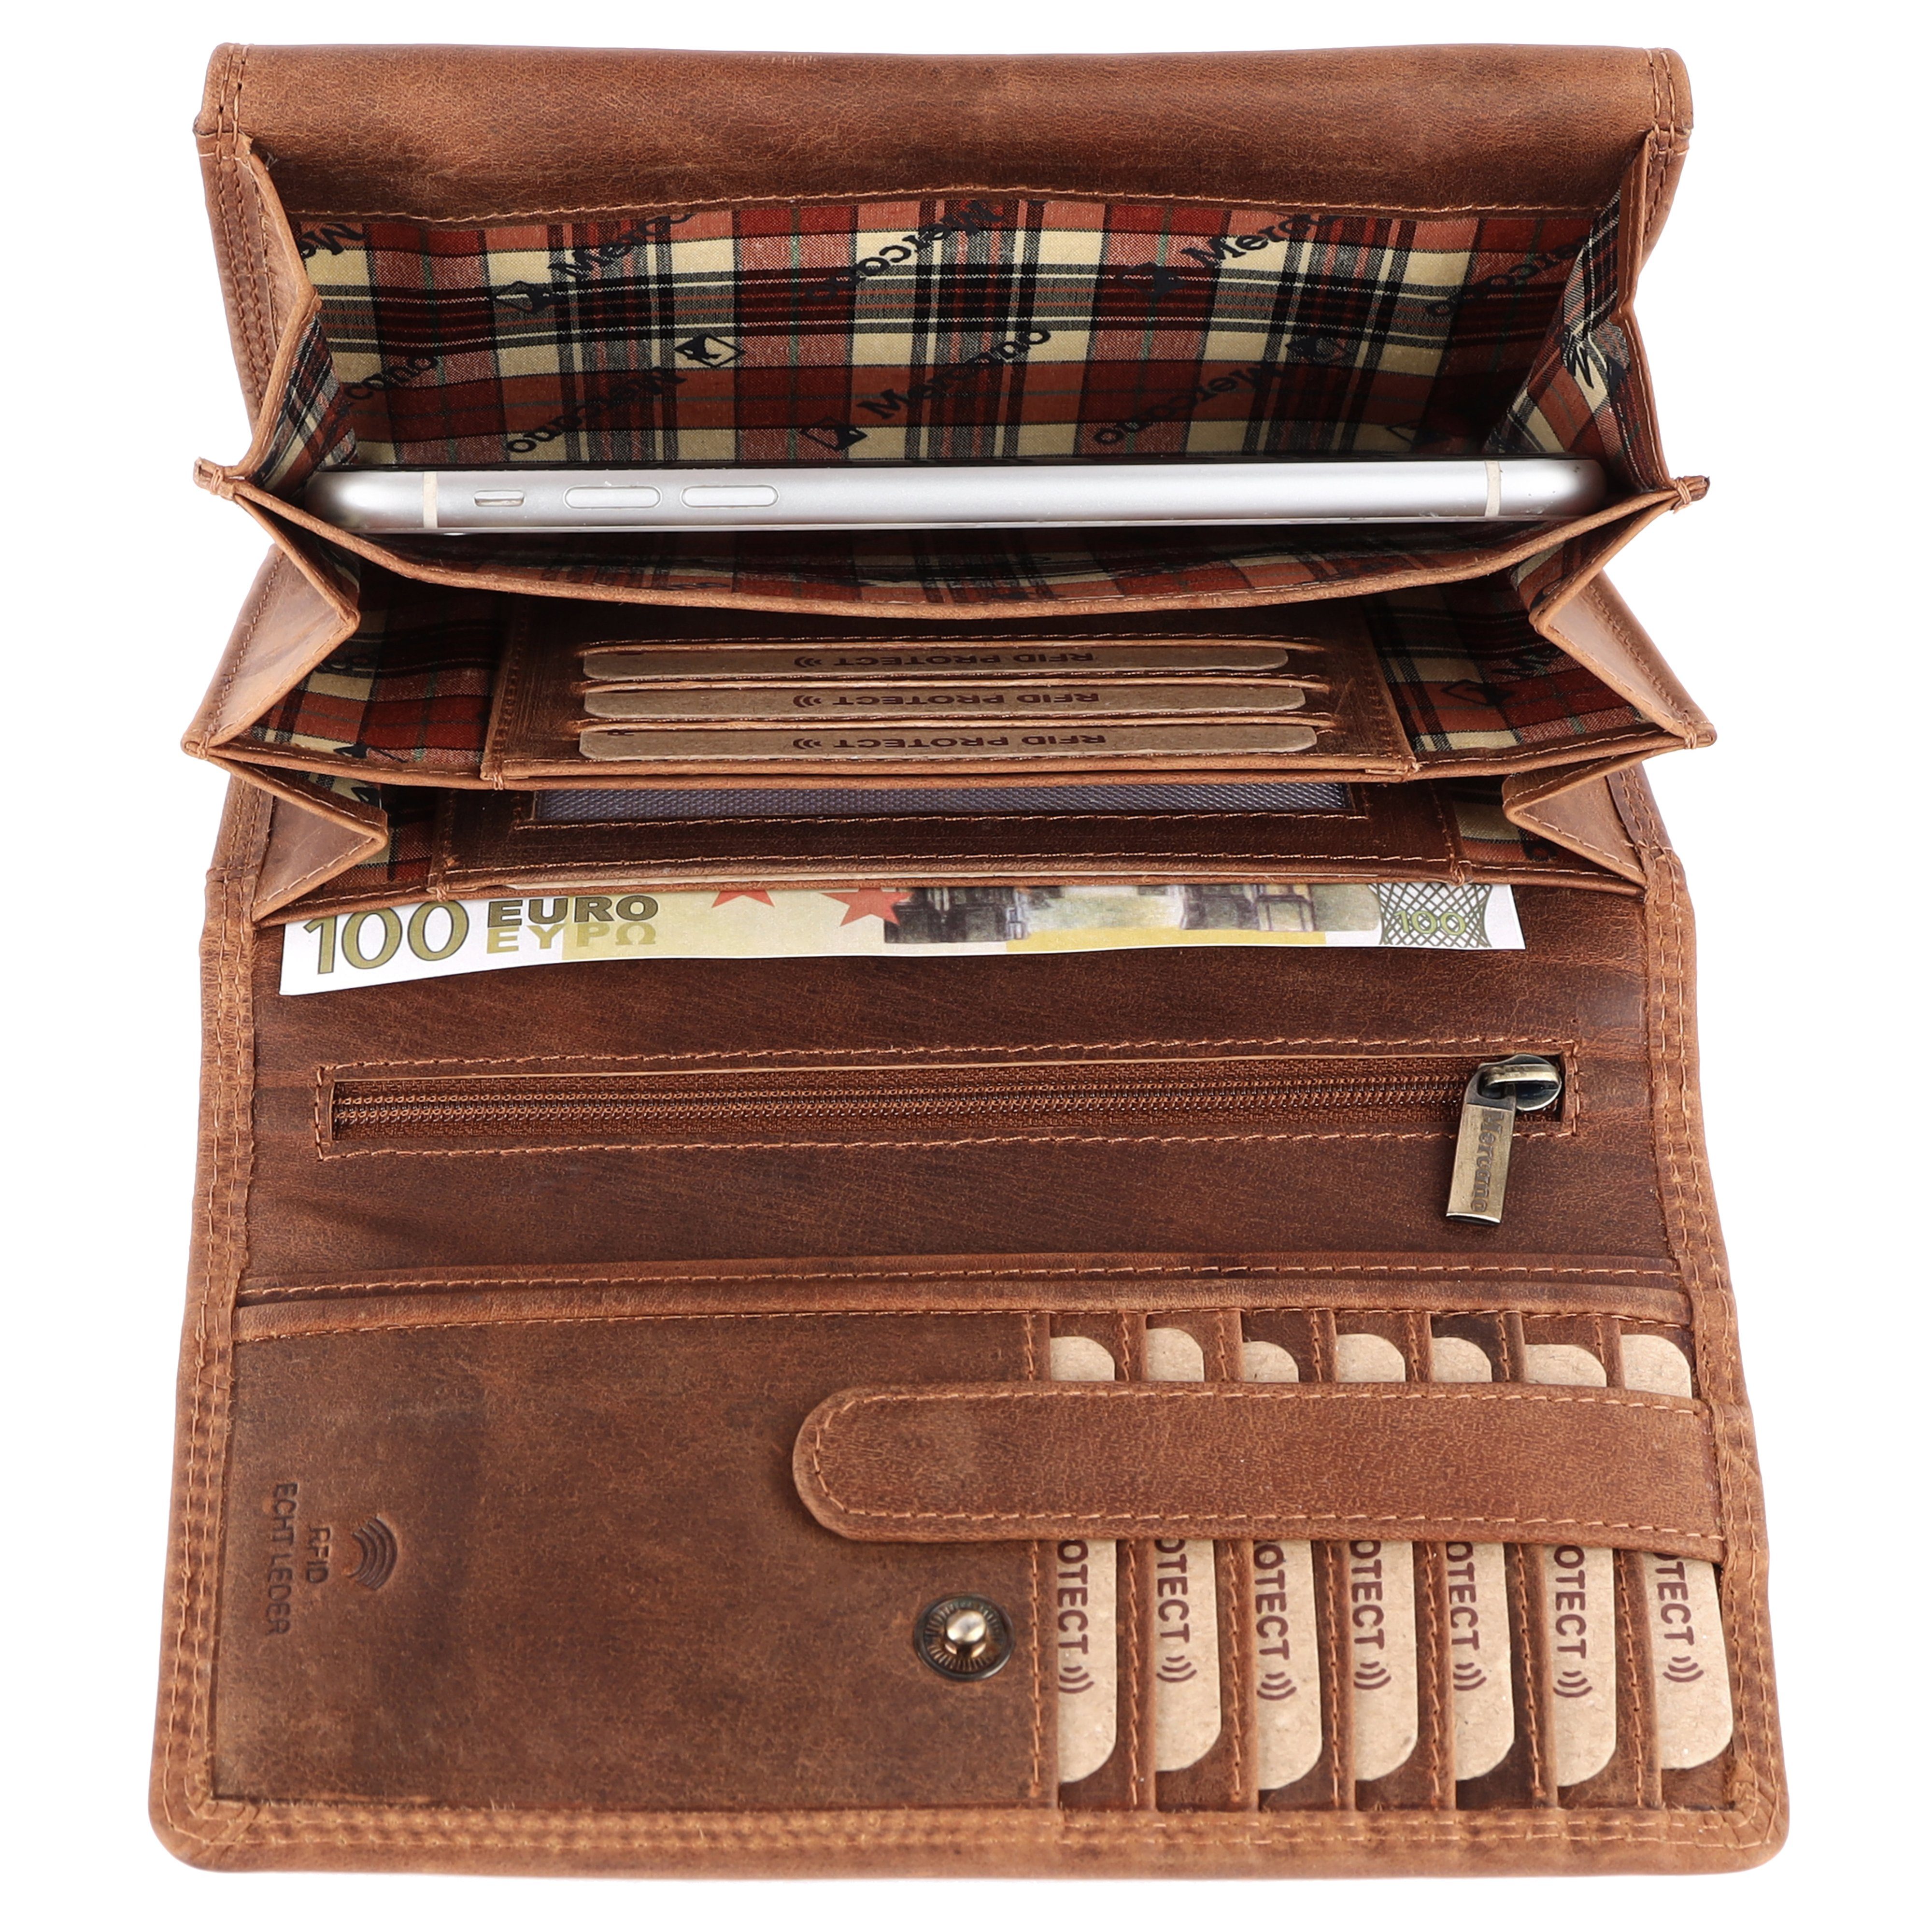 Geschenkbox Doppelnaht, Leder 100% Vintage RFID-Schutz Damen, für aus inkl. Mercano & mit Geldbörse